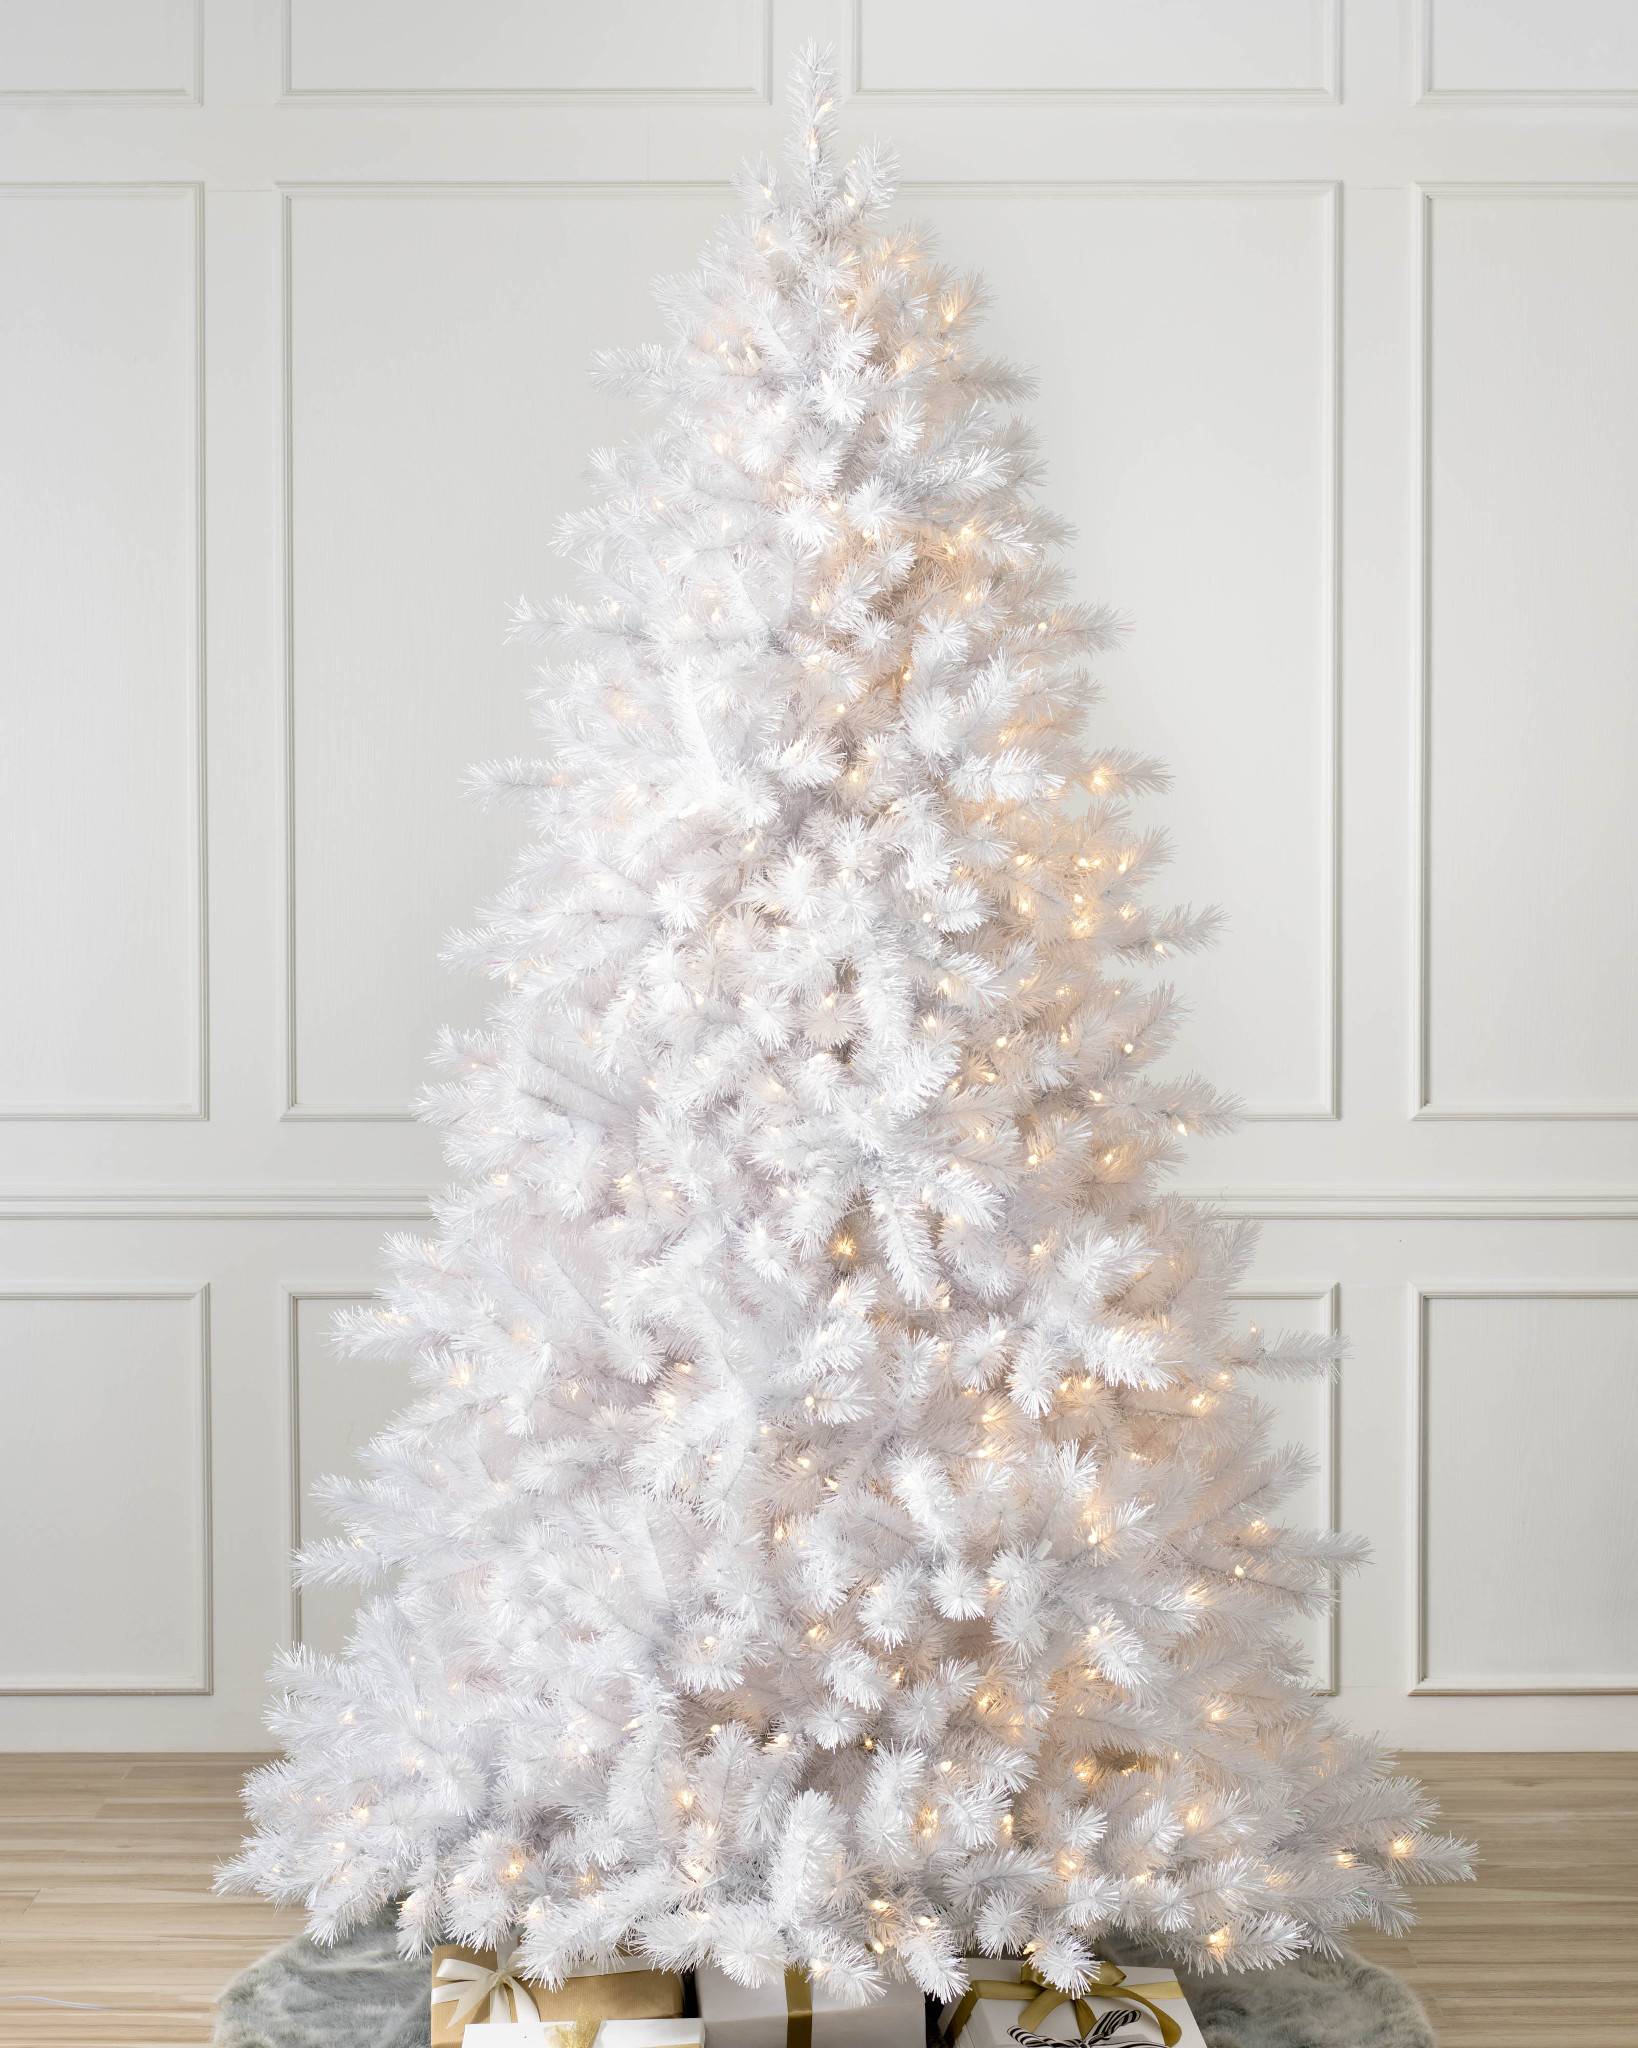 5 Gorgeous White Christmas Trees | Christmas 2020 Trend